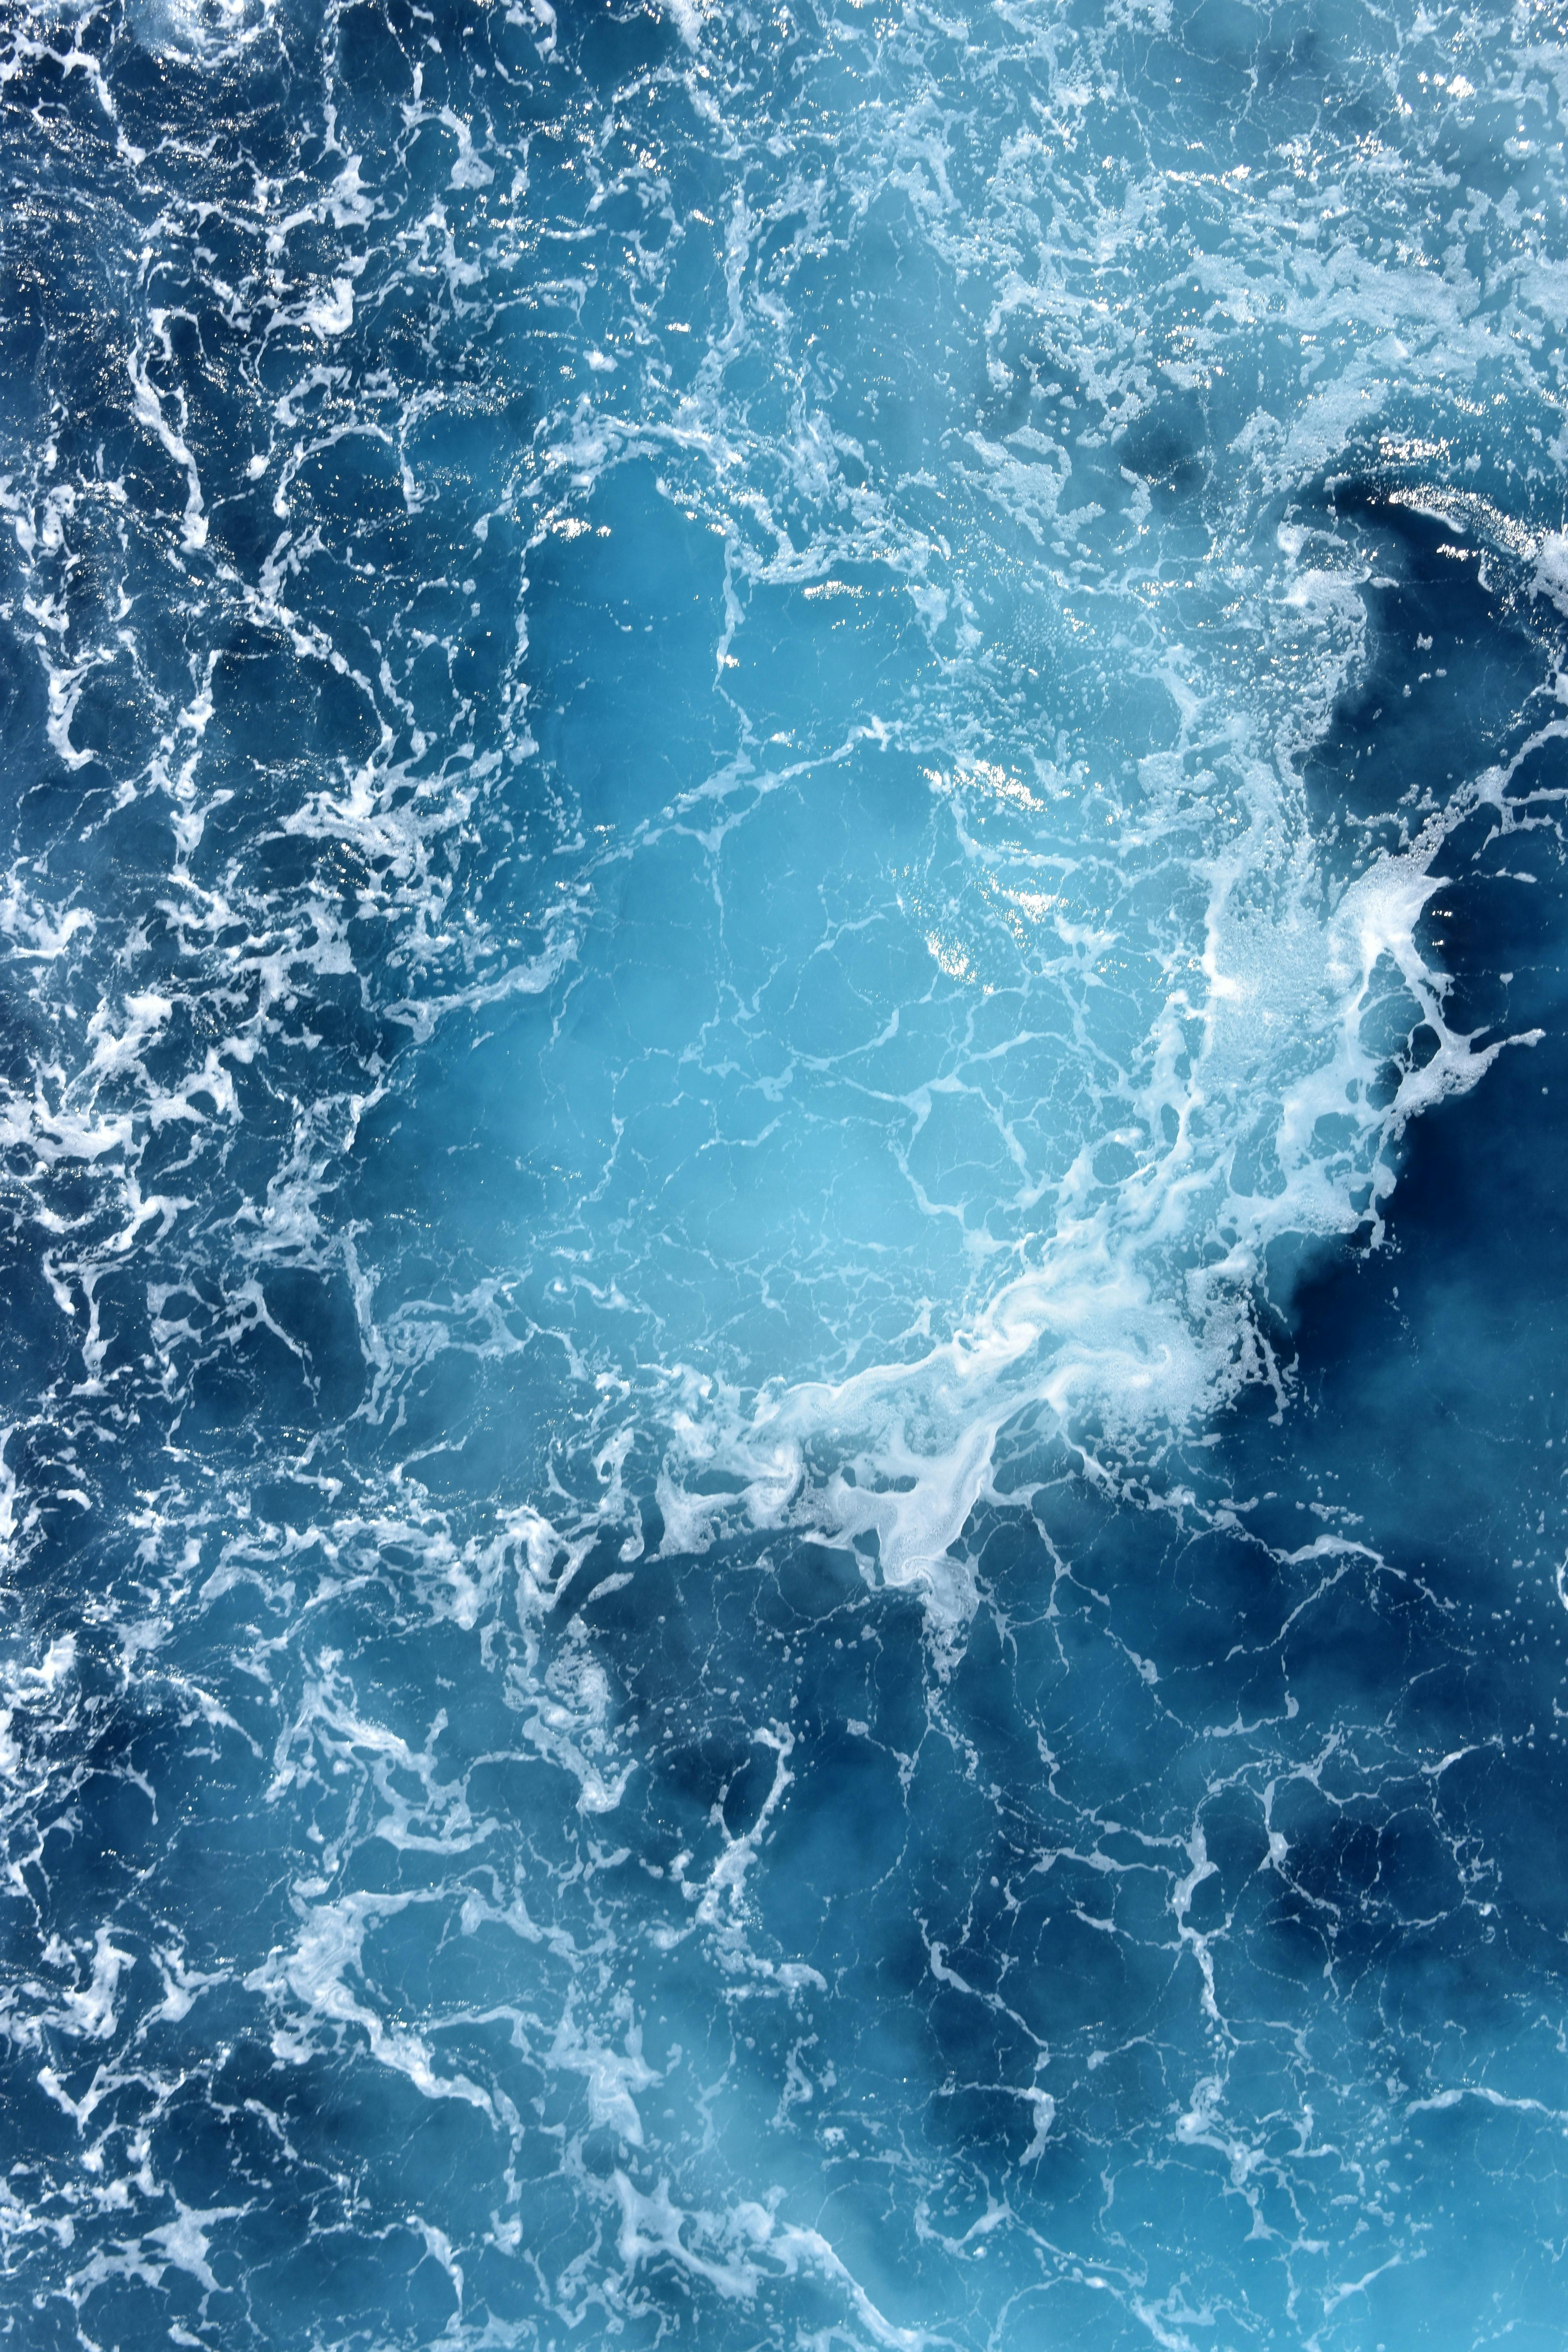 Blue Wallpapers: Free HD Download [500+ HQ] | Unsplash